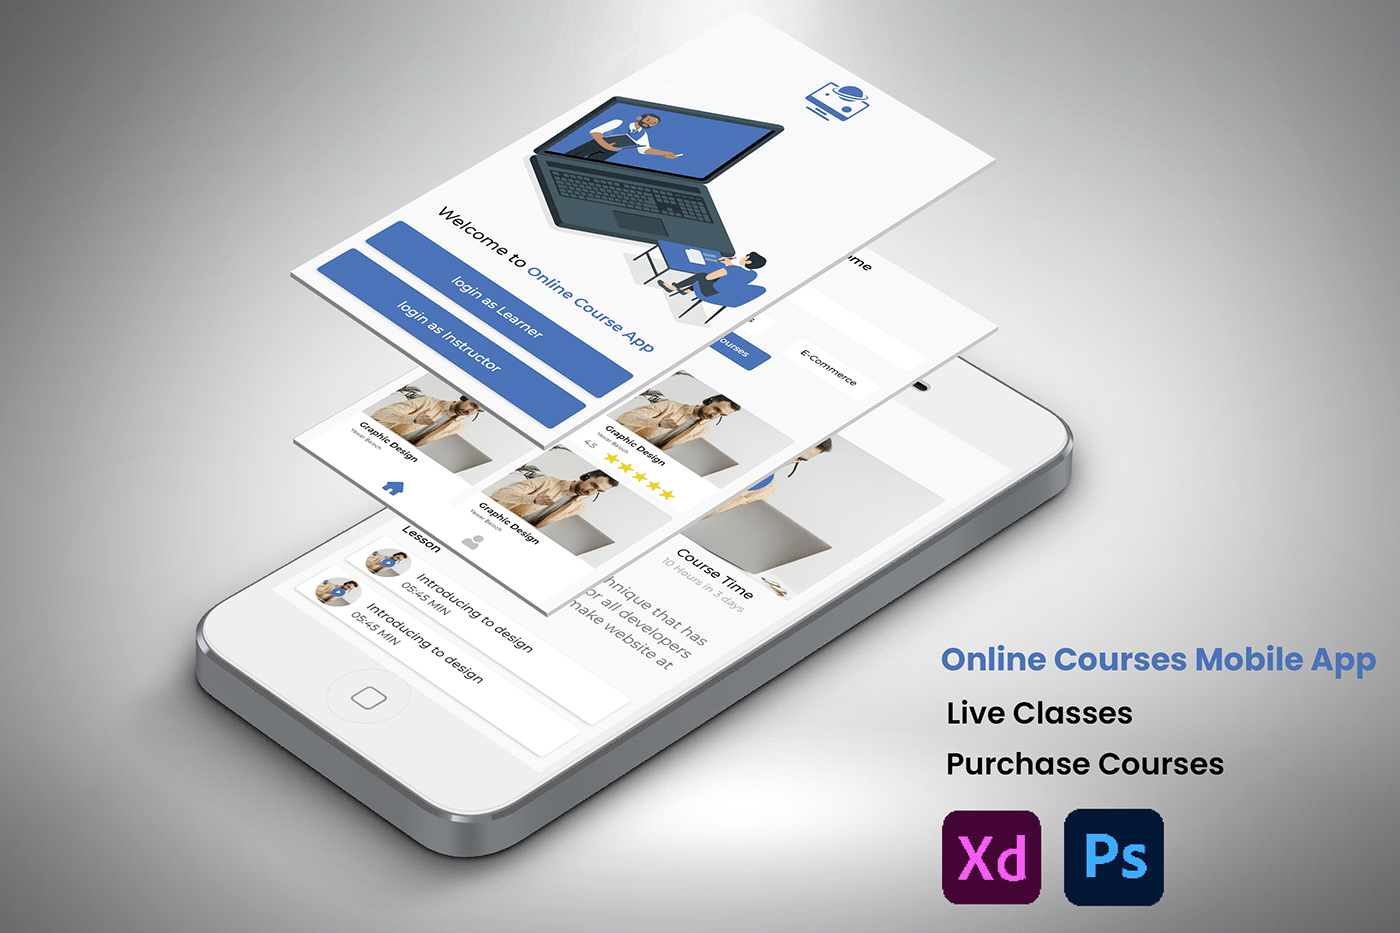 UI/UX ui design Mobile app user interface app design mobile user experience Interface design Graphic Designer